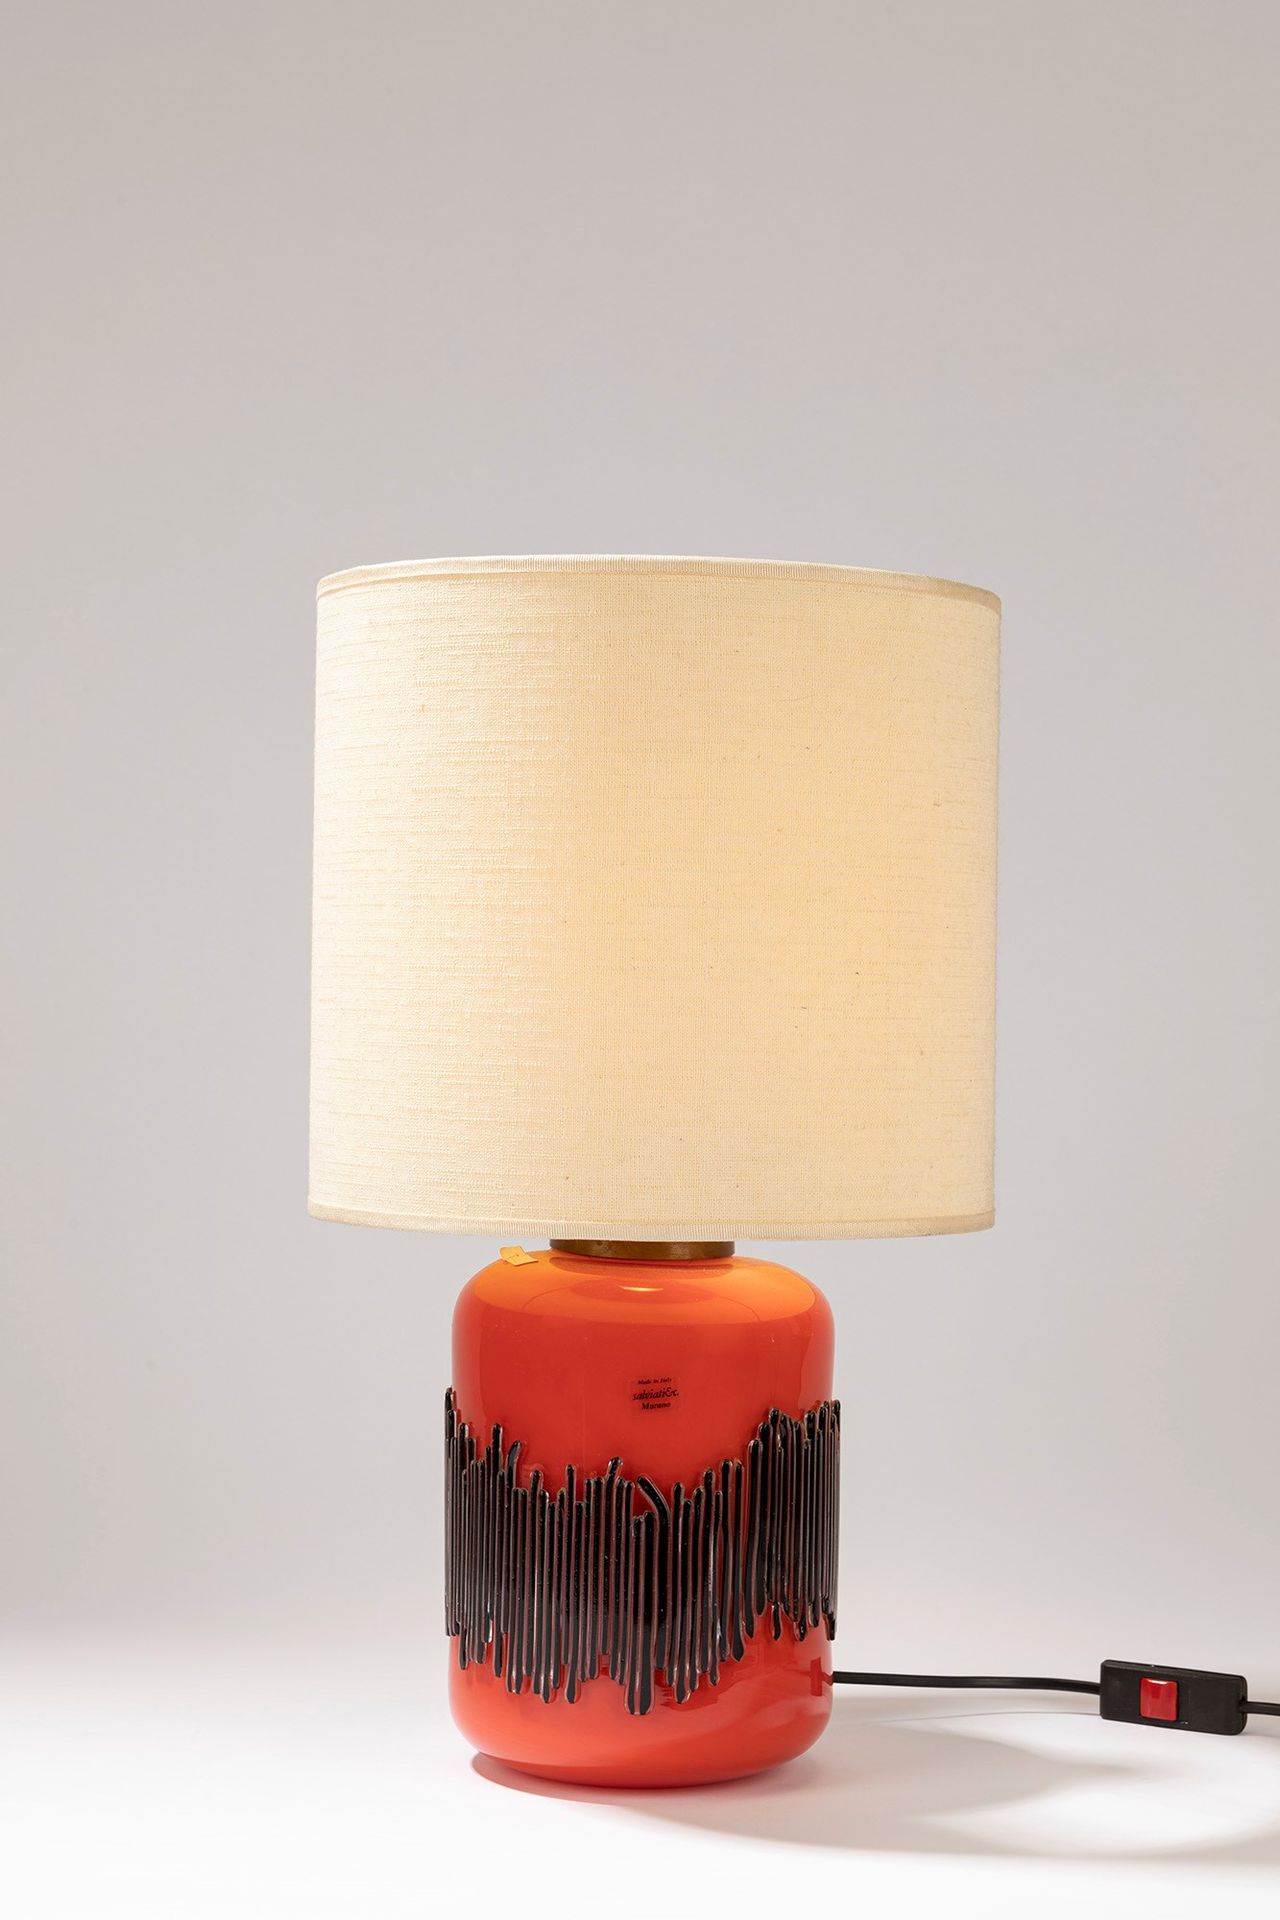 SALVIATI, MURANO Lampe de table, période 70's

cm 48 x 29
verre soufflé orange.